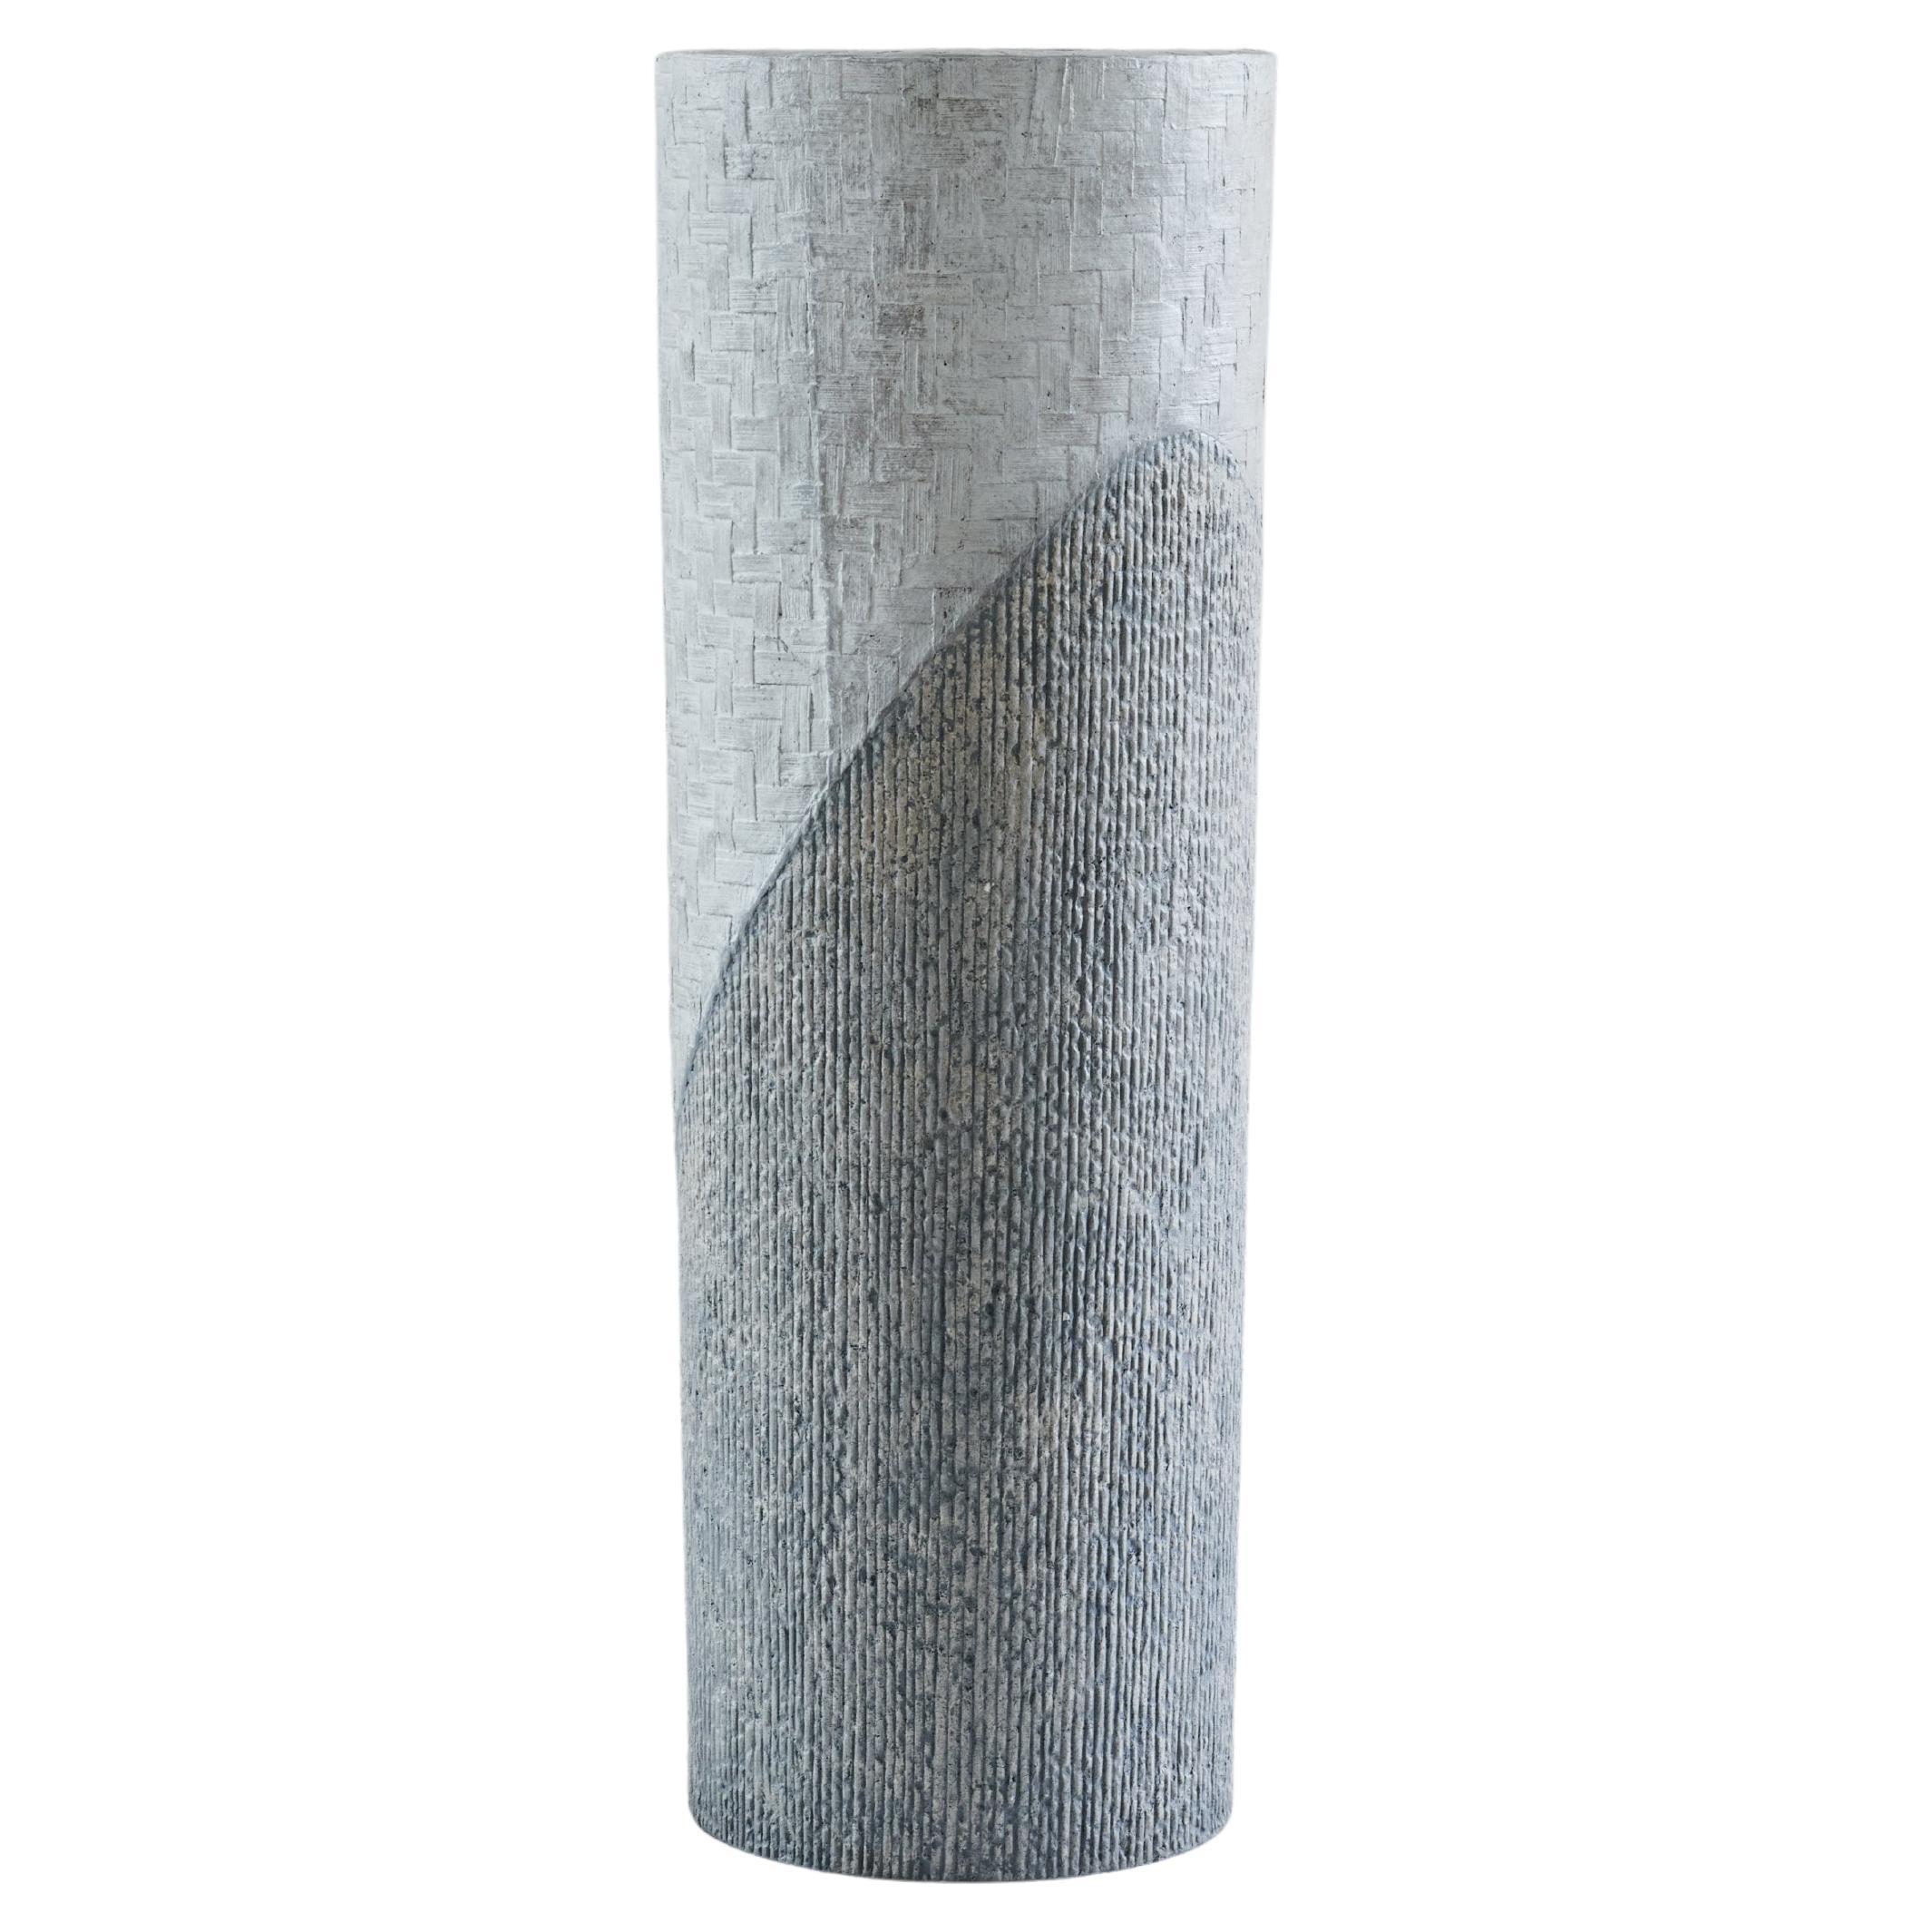 Grand vase composite en pierre calcaire et papier blanc et gris déchiqueté du Studio Laurence